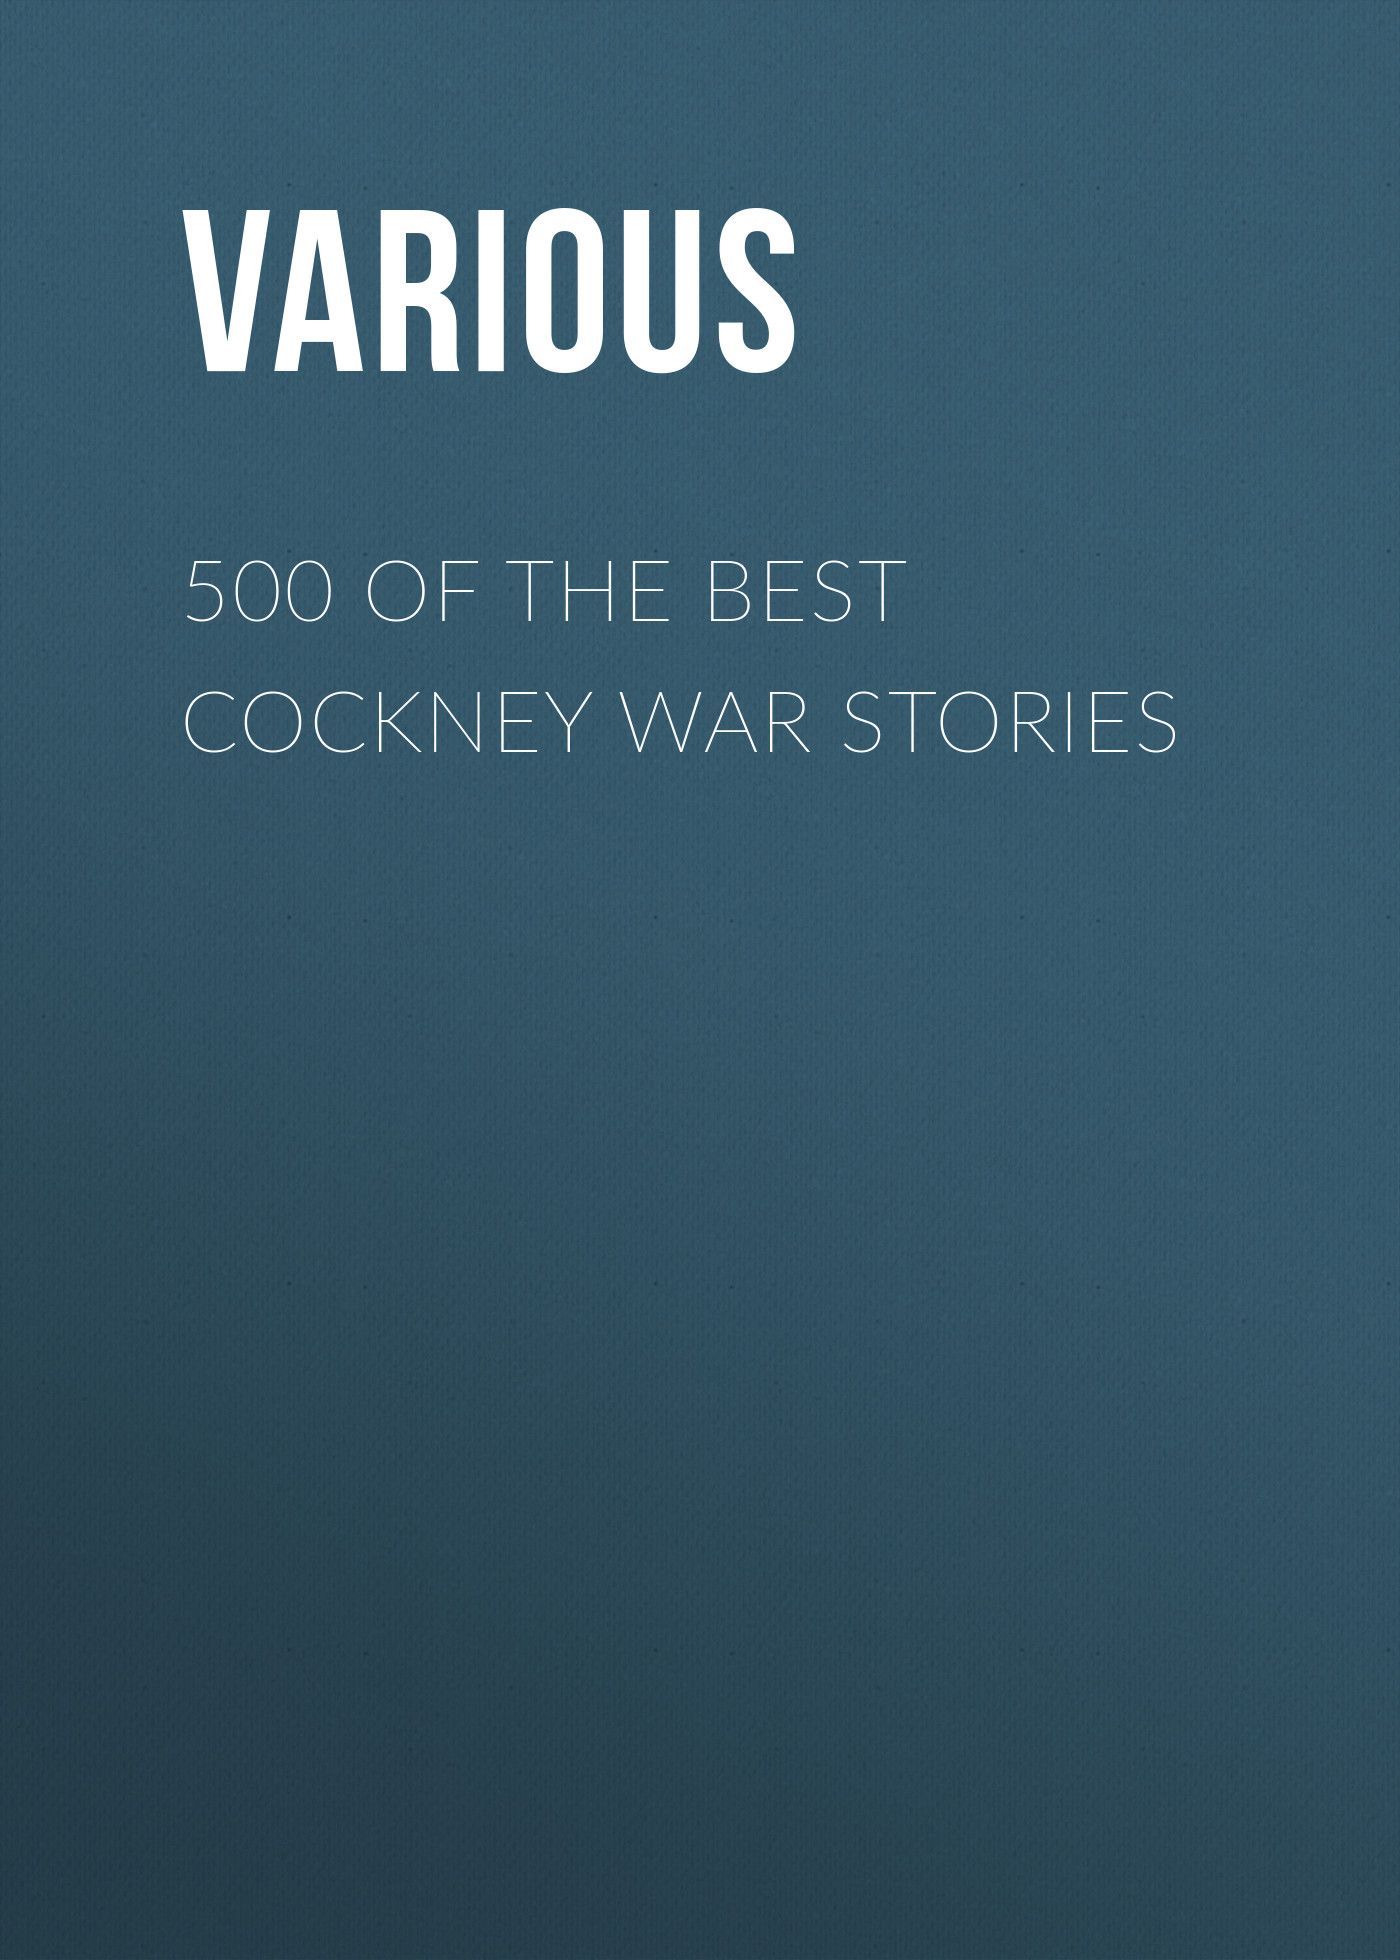 Книга 500 of the Best Cockney War Stories из серии , созданная  Various, может относится к жанру Журналы, История, Зарубежная образовательная литература, Книги о войне. Стоимость электронной книги 500 of the Best Cockney War Stories с идентификатором 25570327 составляет 0 руб.